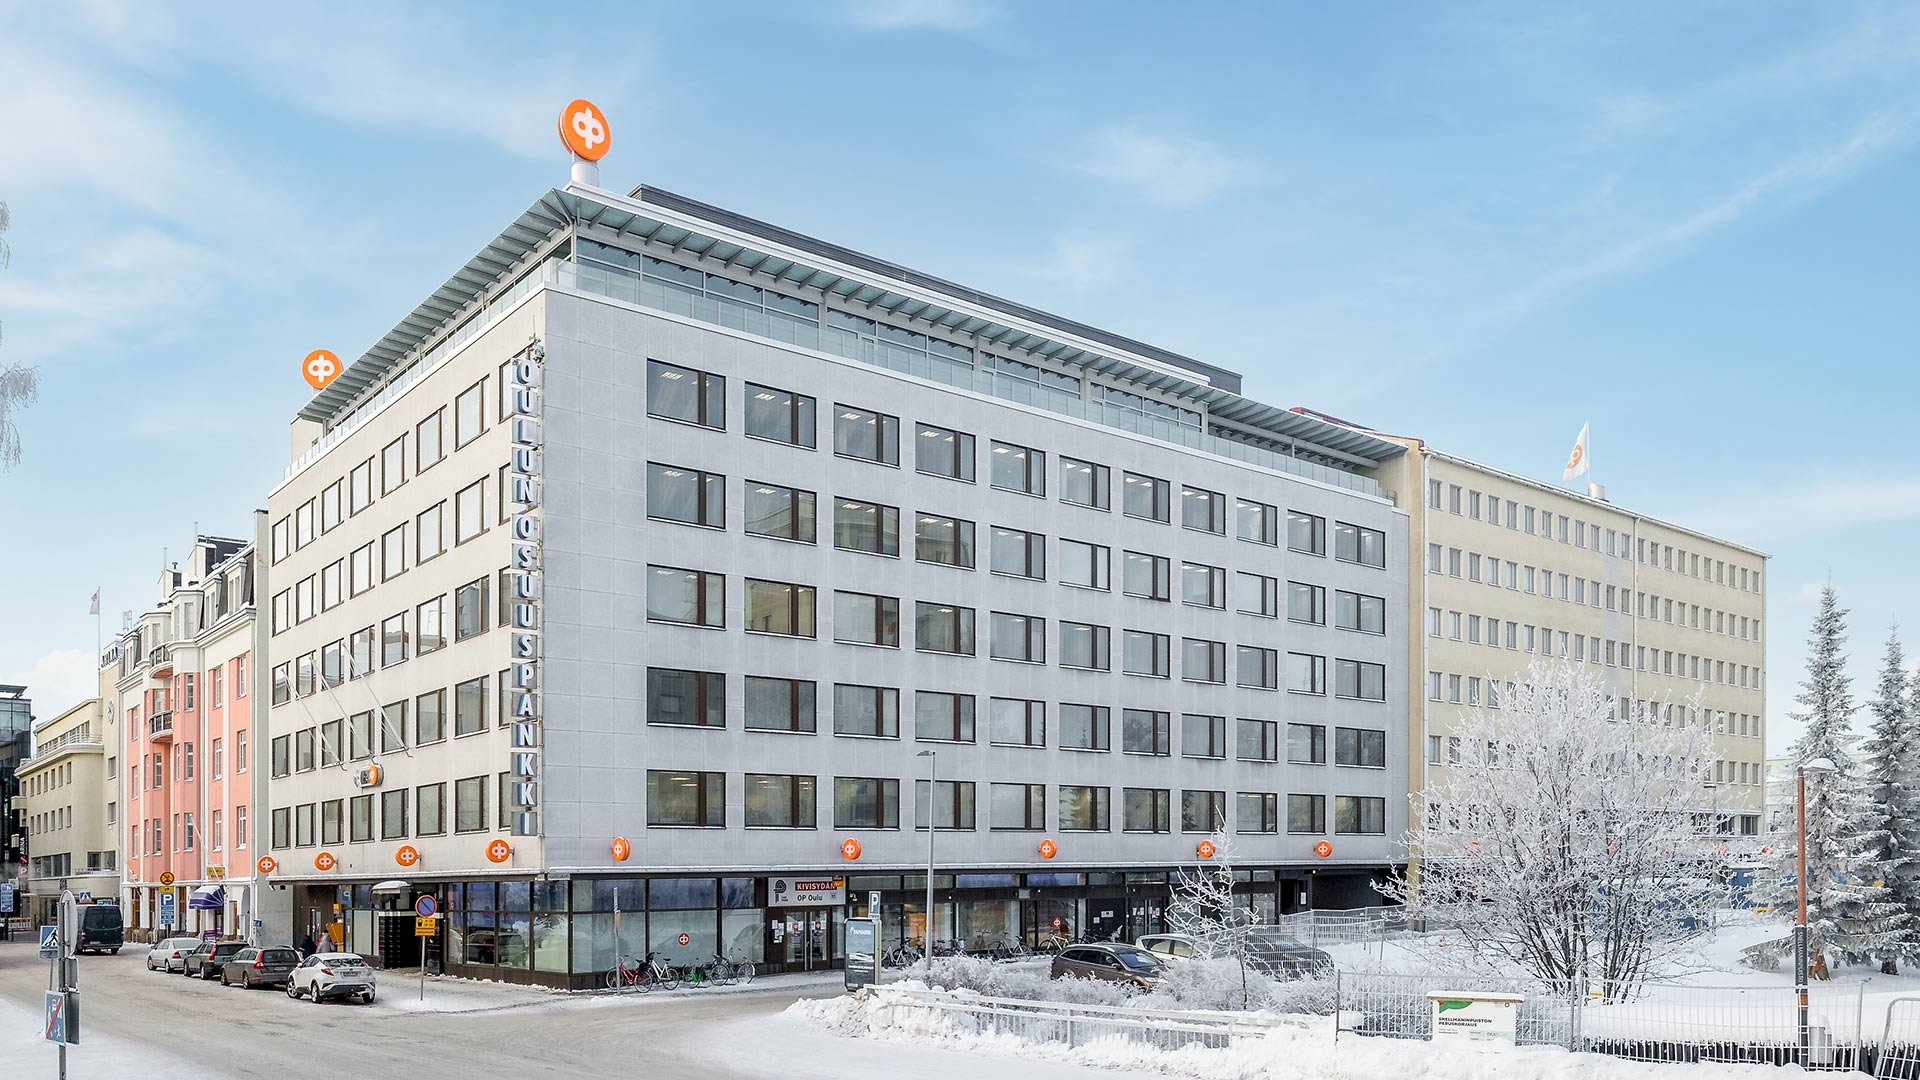 Oulun Osuuspankin pääkonttorin tilalle etsitään uusia ratkaisuja arkkitehtuurikilpailulla